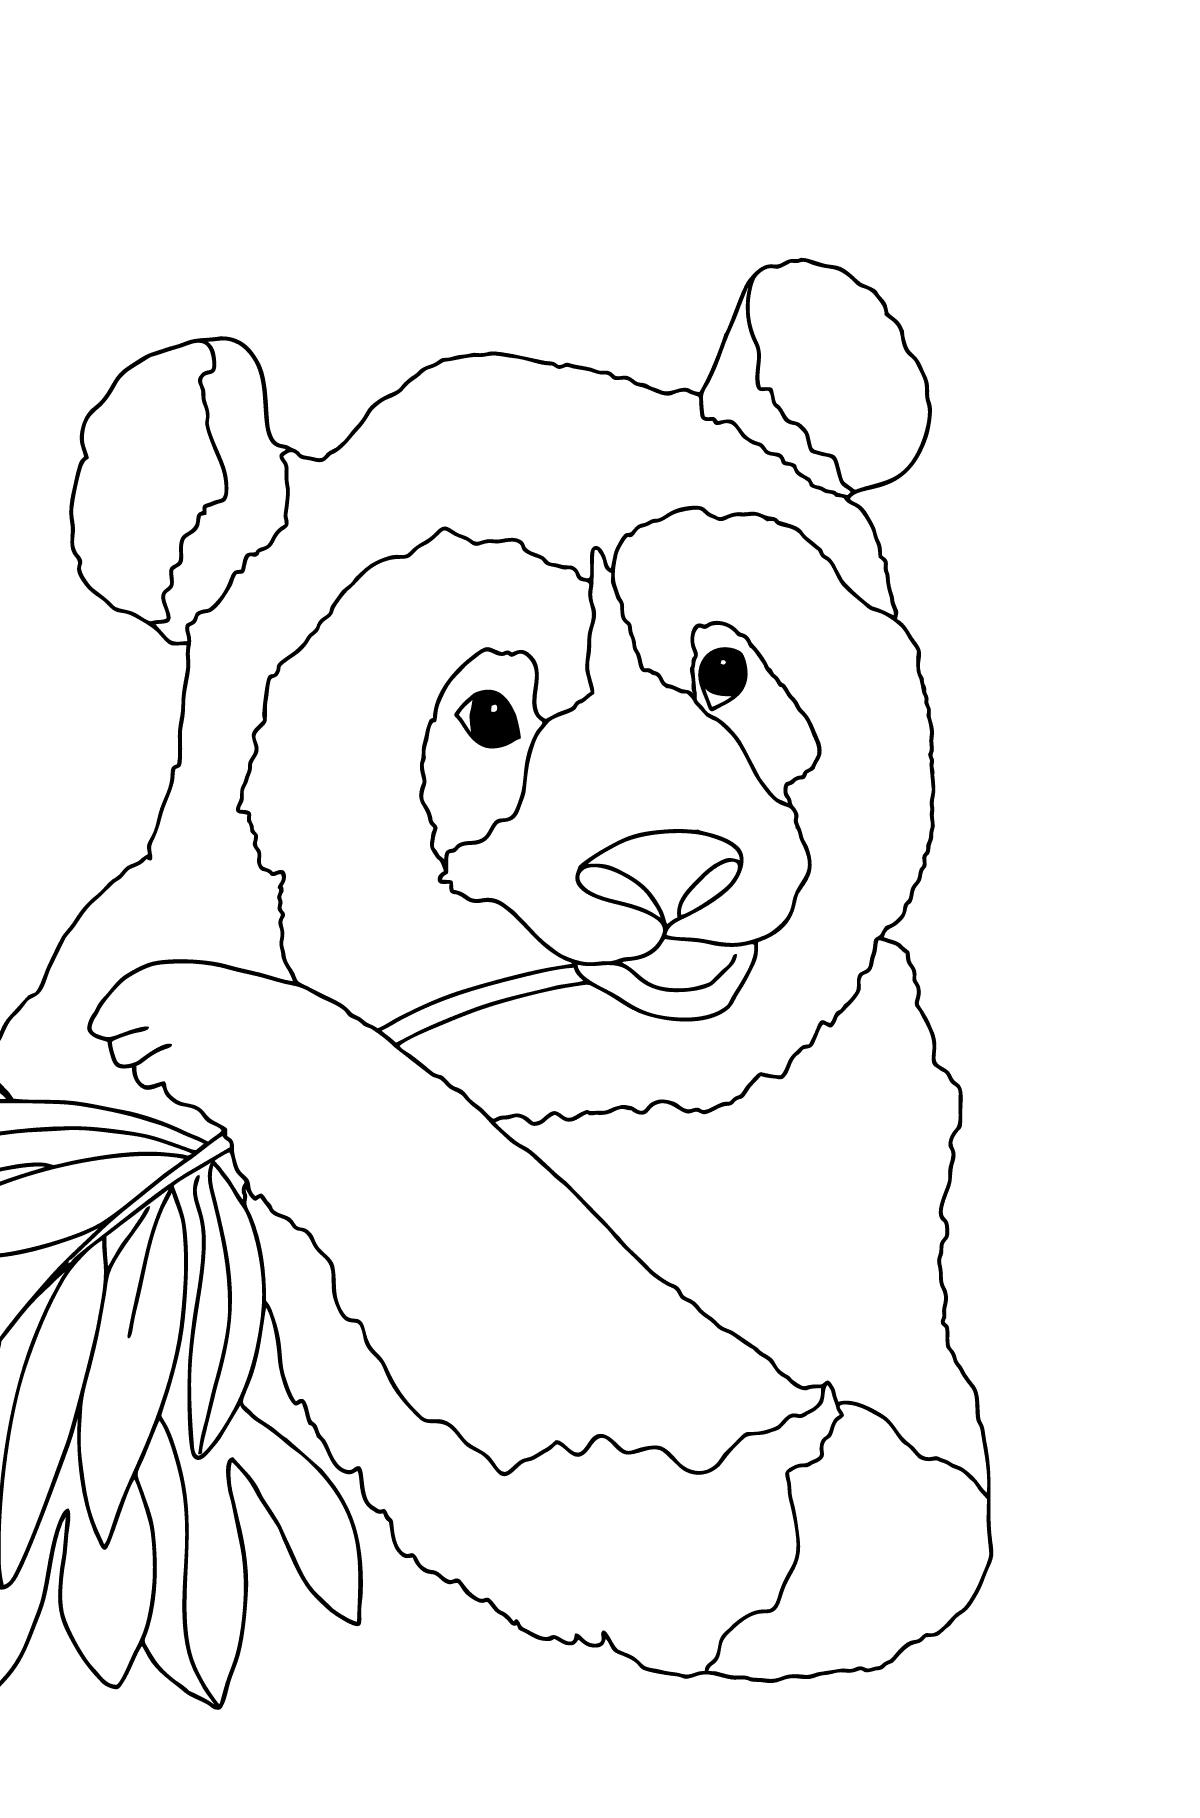 Värityskuva kaunis panda (vaikea) - Värityskuvat lapsille